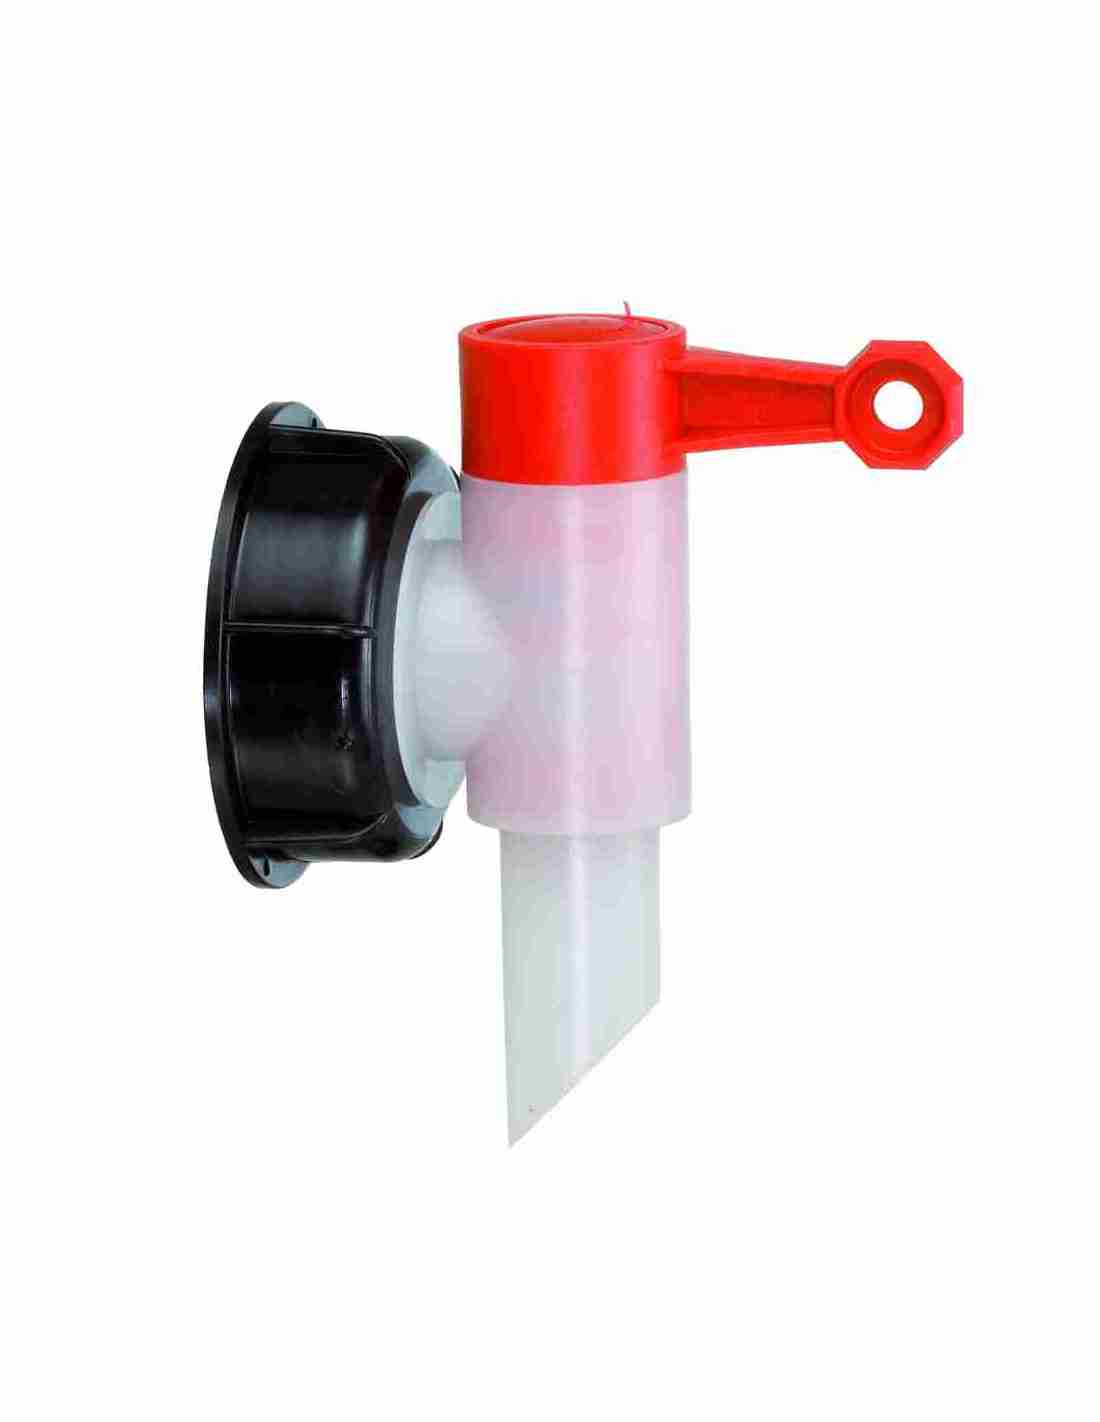 Auslaufhahn für 5 Liter Kanister aus Kunststoff • Nanoversiegelung